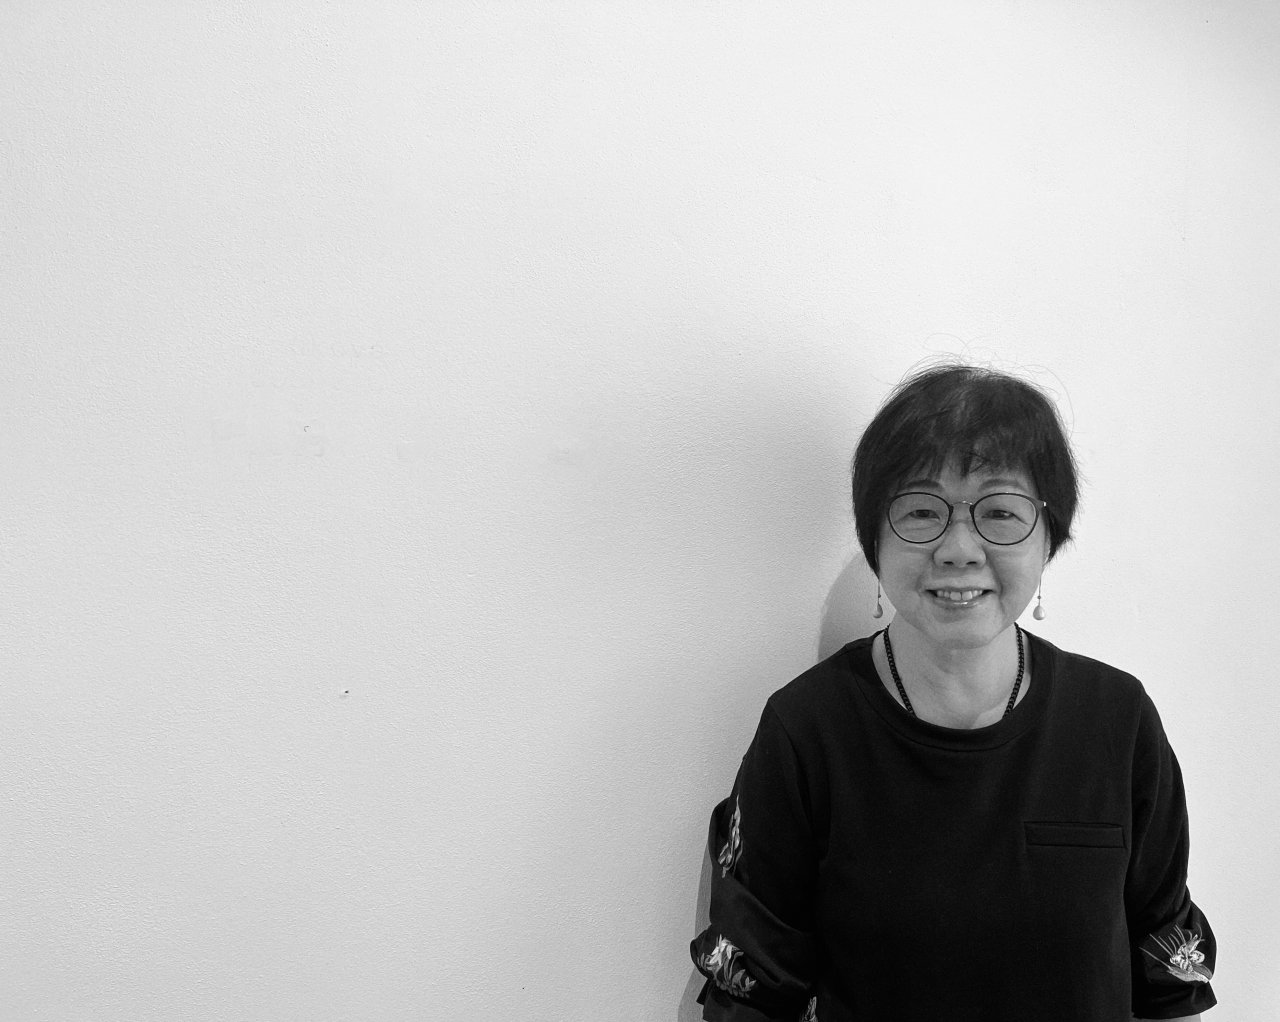 5. Wong Wo Bik z Hongkongu přijela na uměleckou rezidenci do Domu umění Ústí nad Labem